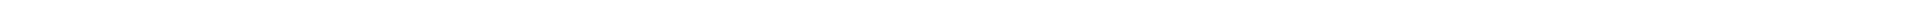 Лечение кариеса зубов - цены в Астане (Нур-Султан), Алматы, Атырау, Усть-Каменогорск, Уральск, Кокшетау в Казахстане, фото 8